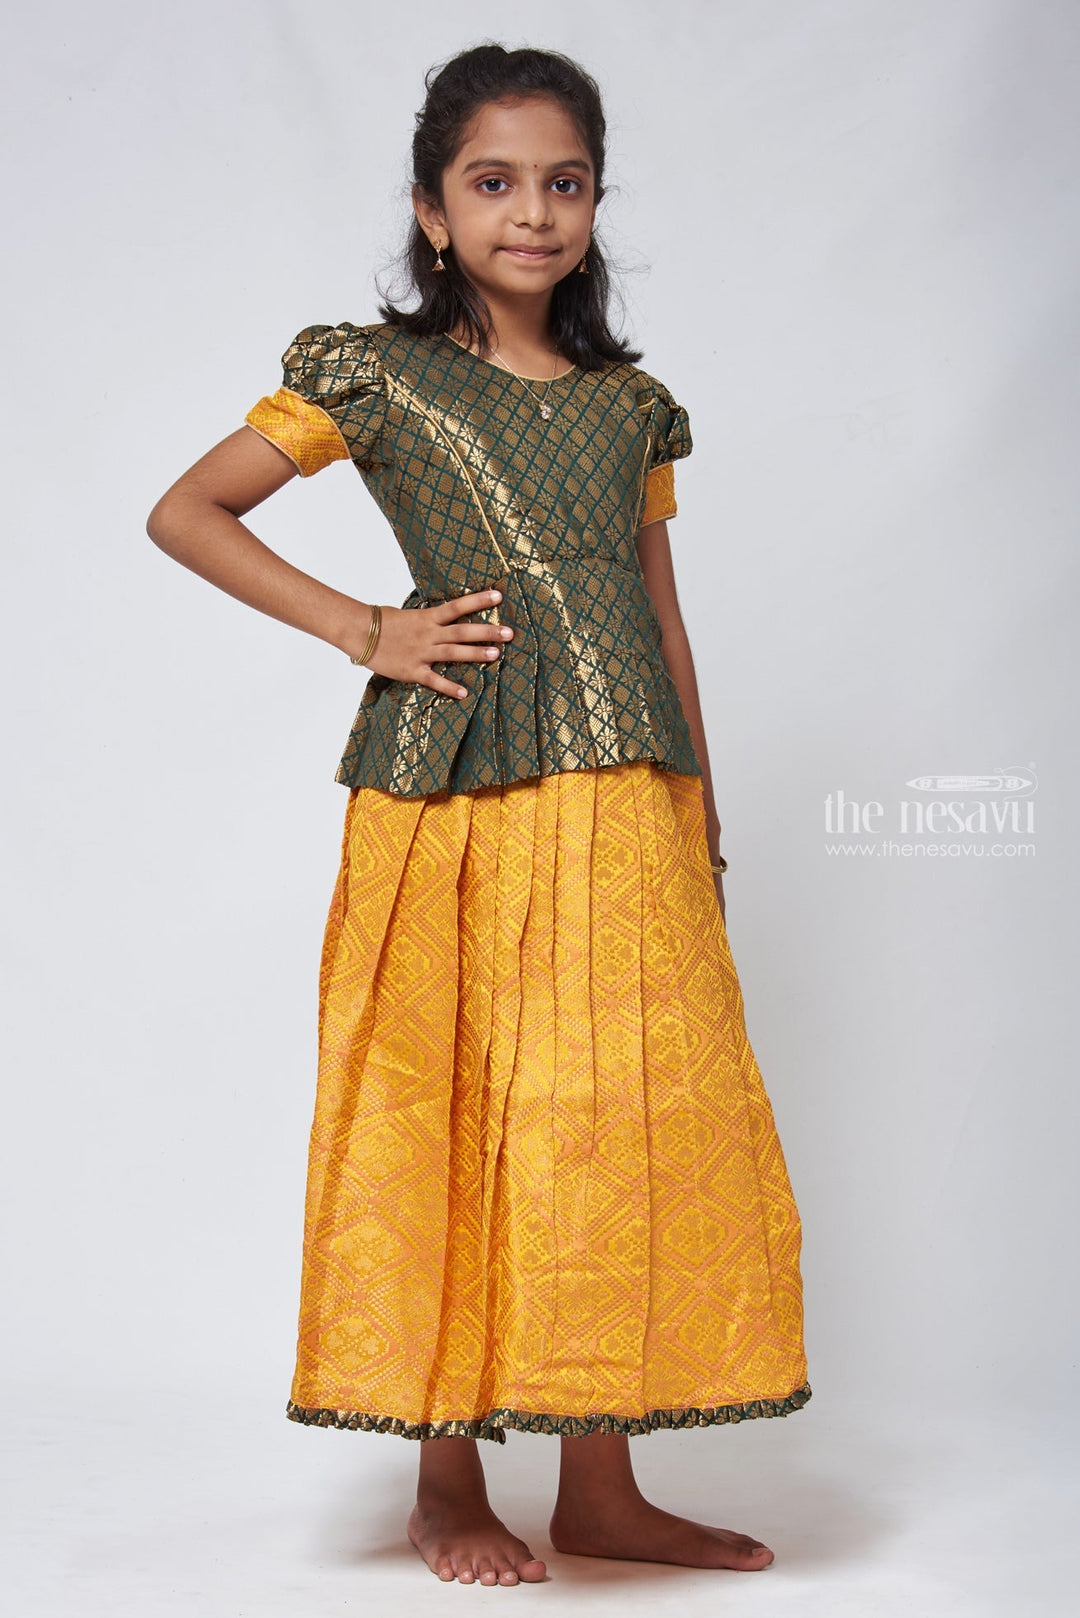 The Nesavu Pattu Pavadai Majestic Brocade Green Peplum Blouse paired with Patola Yellow Pattu Pavadai: Timeless South Indian Fashion Nesavu Pattu Pavadai with neck designs | Girls traditional silk dresses | The Nesavu